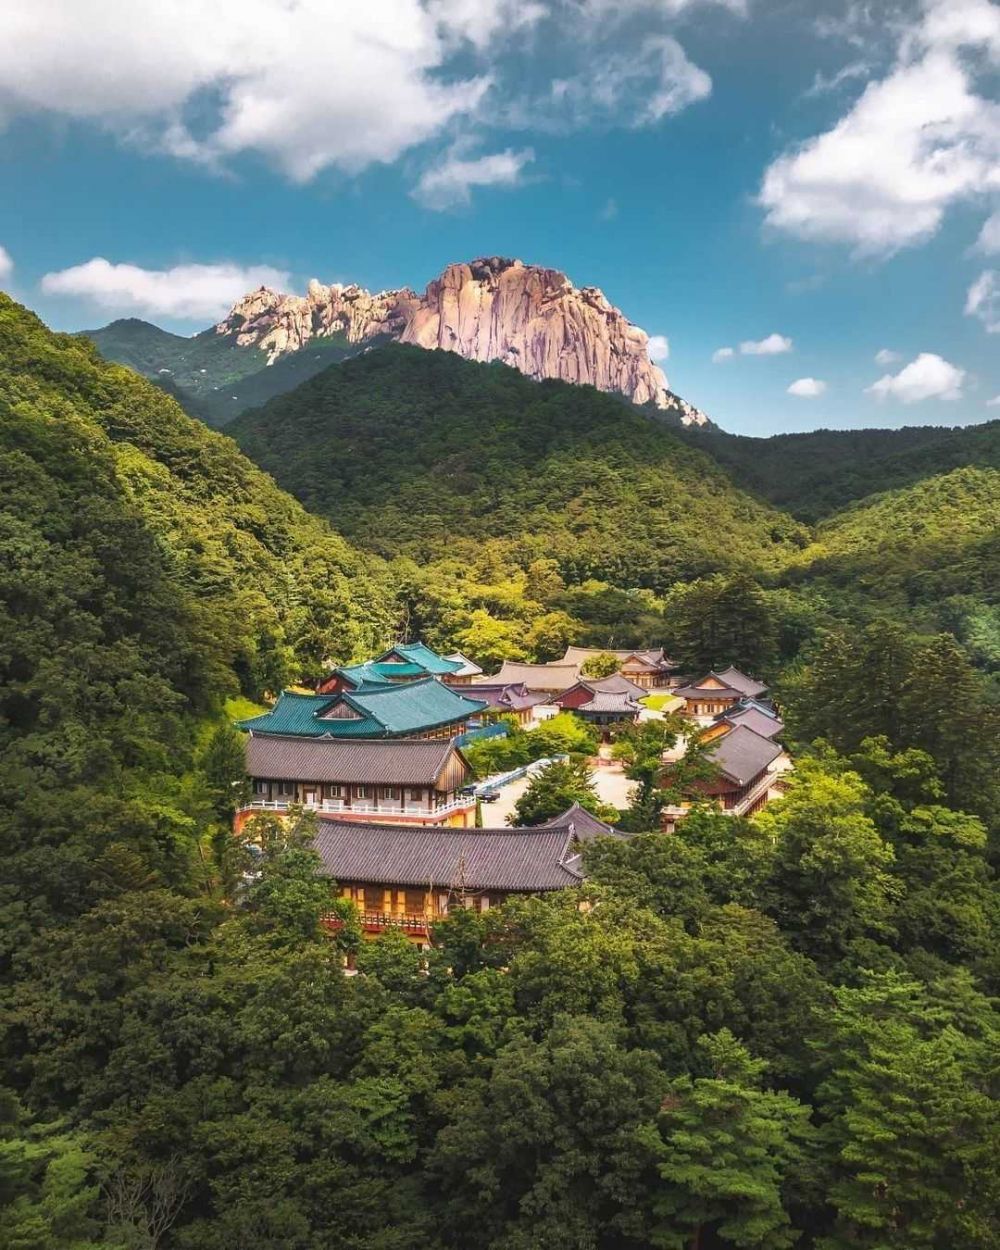 Wisata Alam di Korea Selatan Paling Indah Ada Bekas Aliran Lava